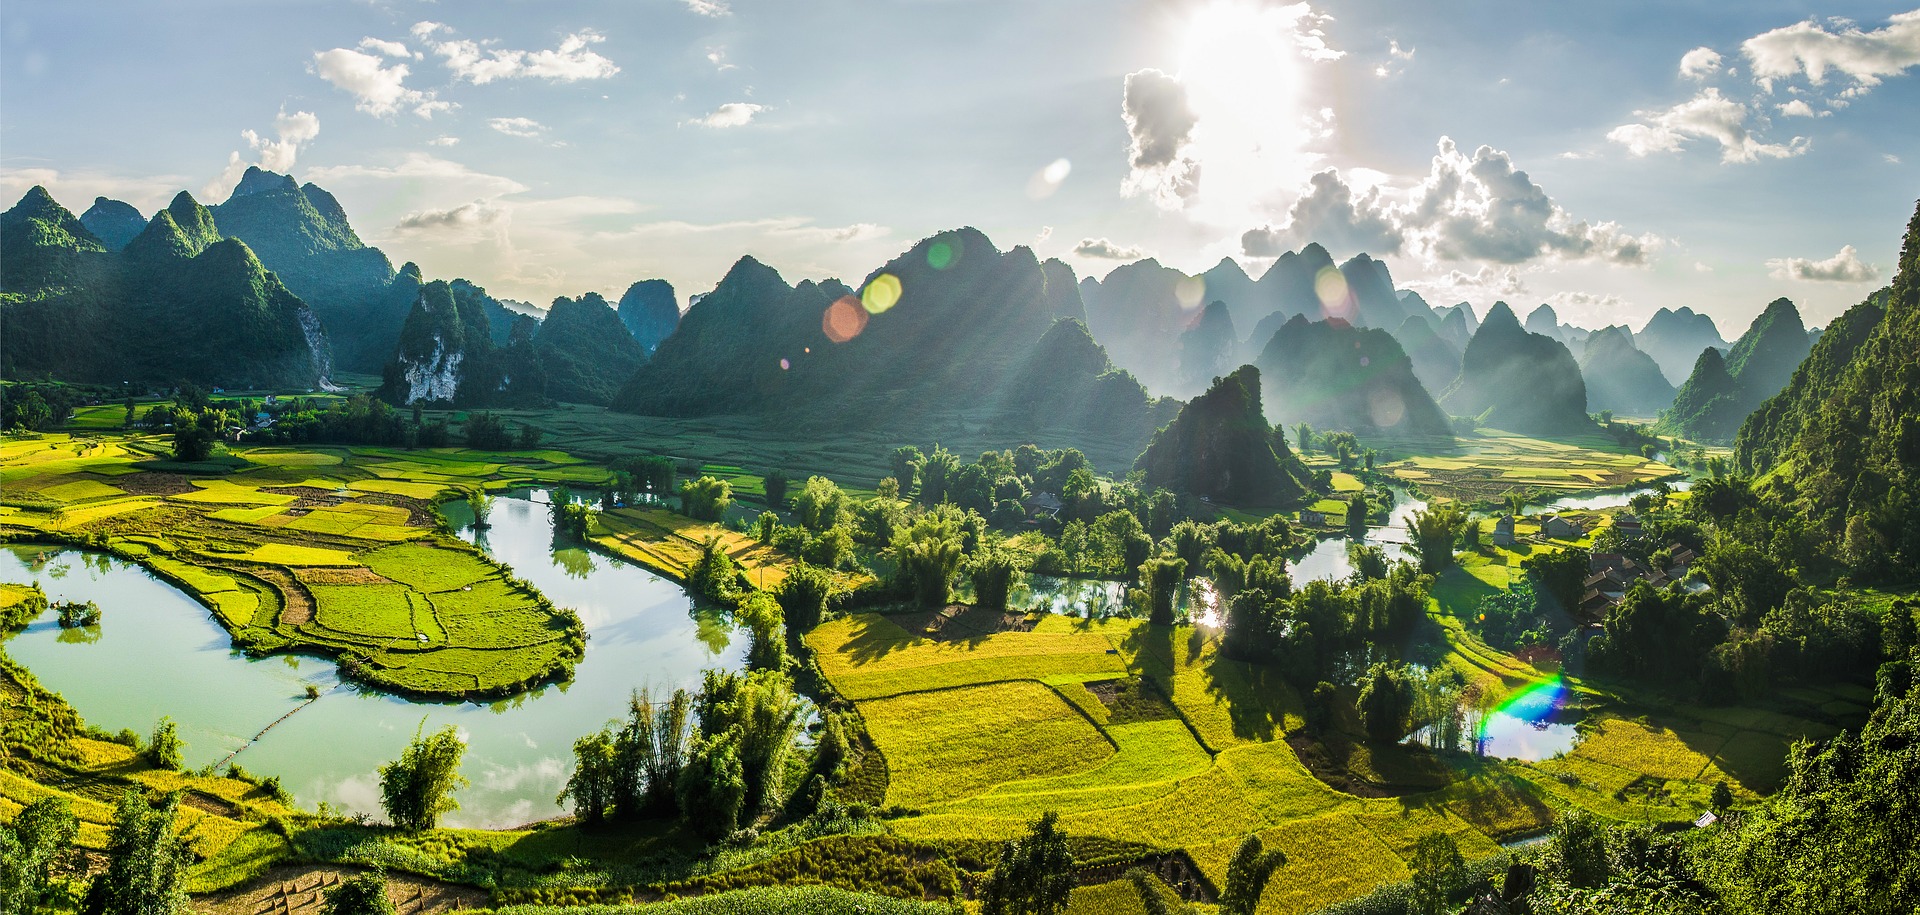 Les bonnes raisons pour visiter le Vietnam